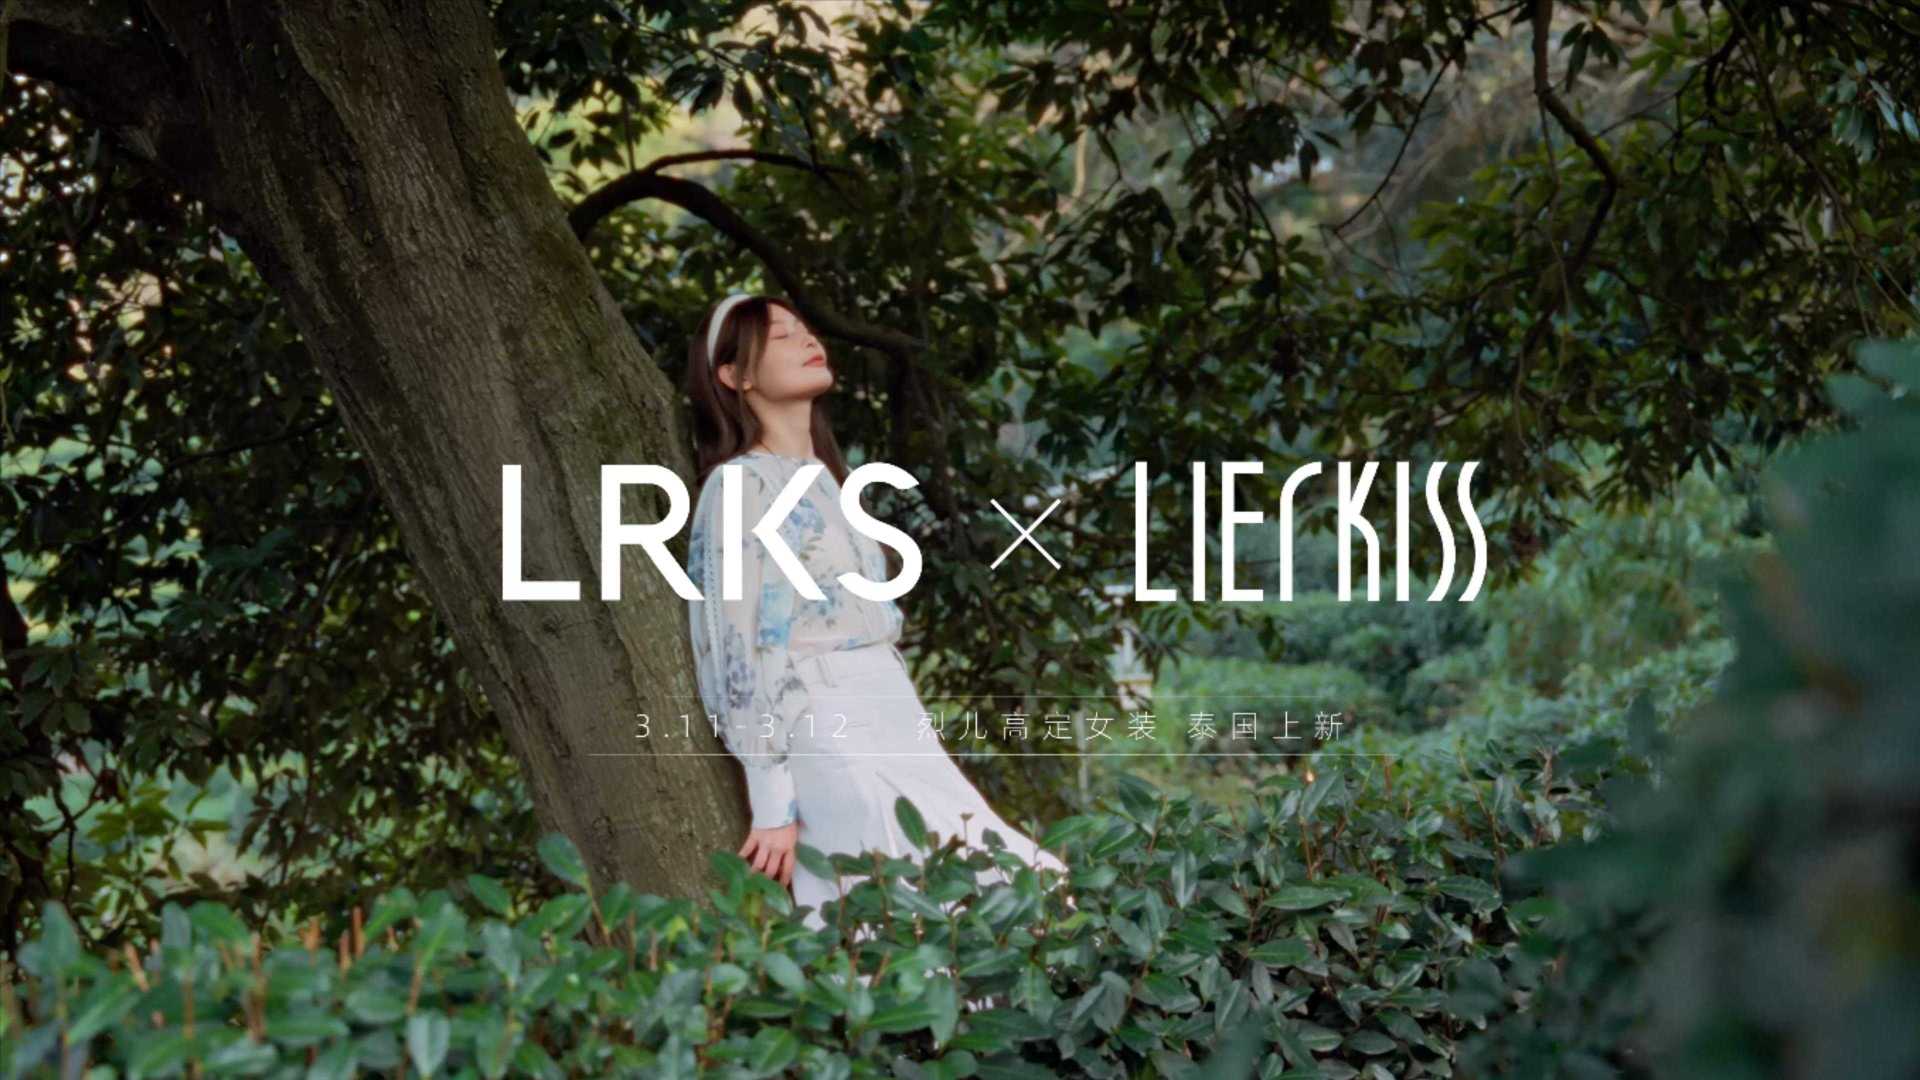 lierkiss & LRKS品牌——春夏之行